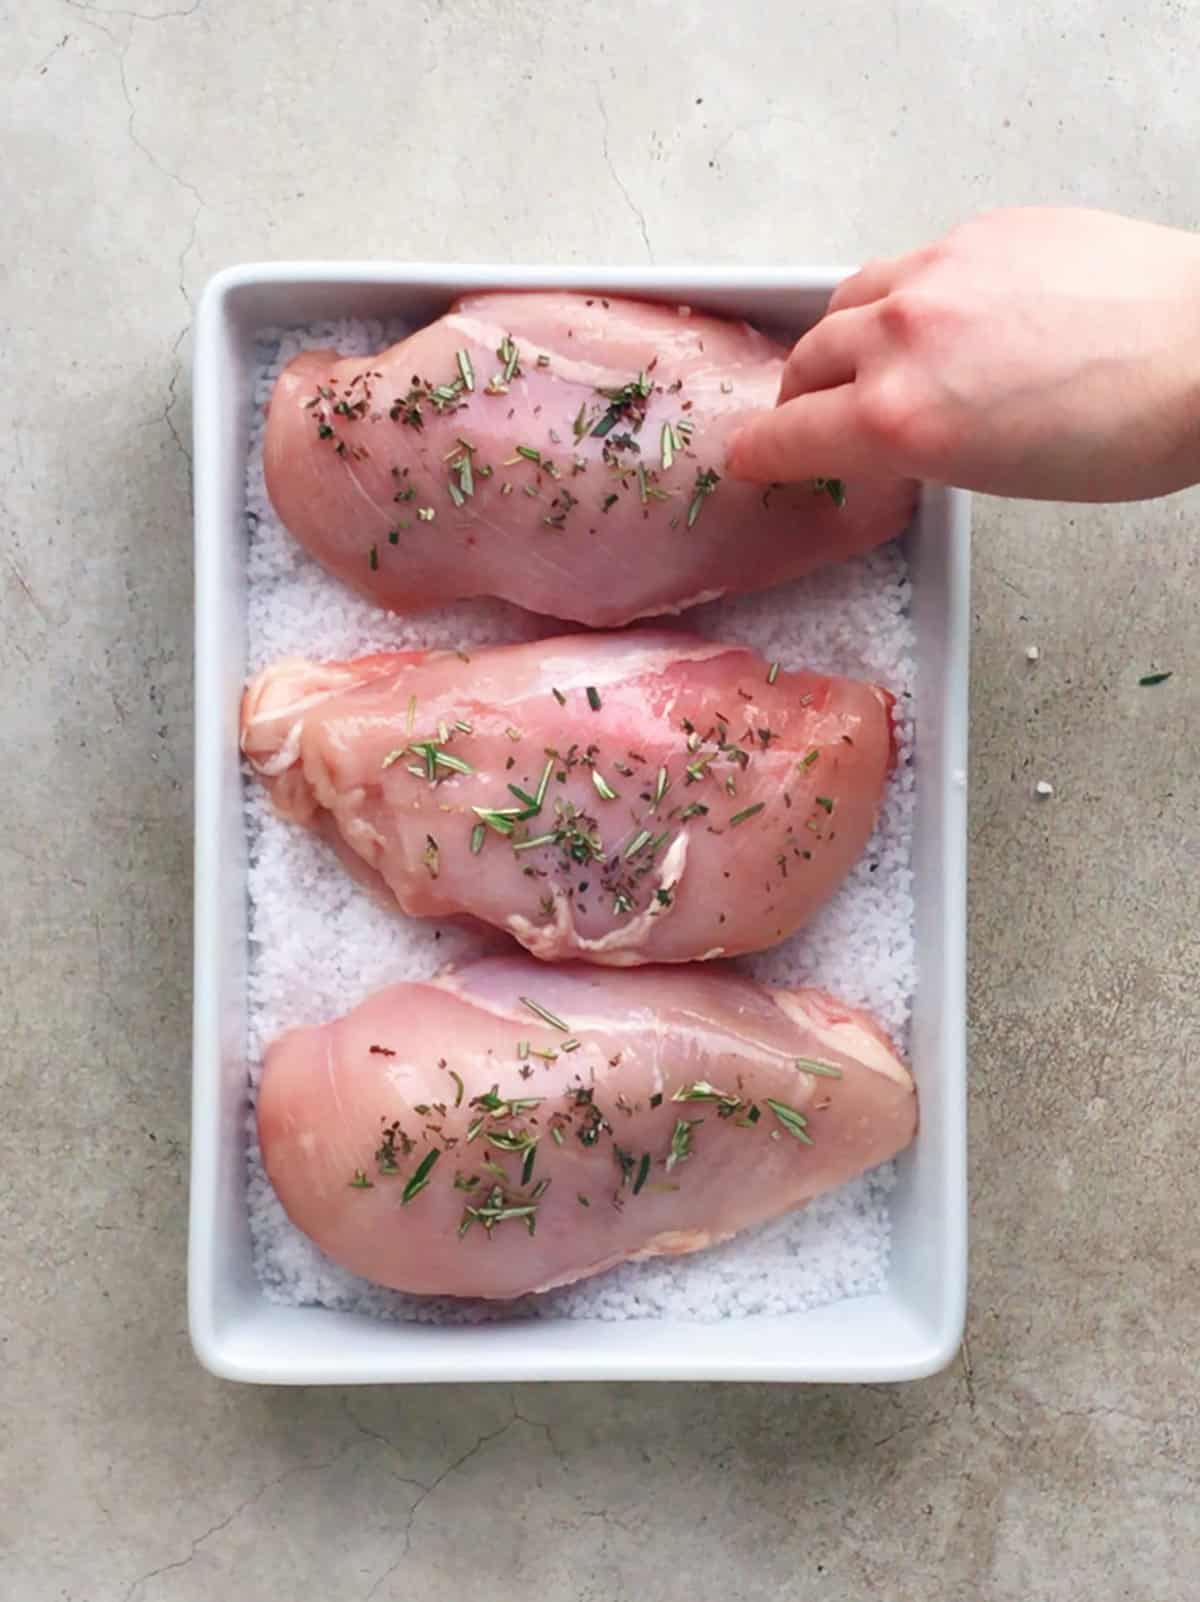 Chicken covered in salt